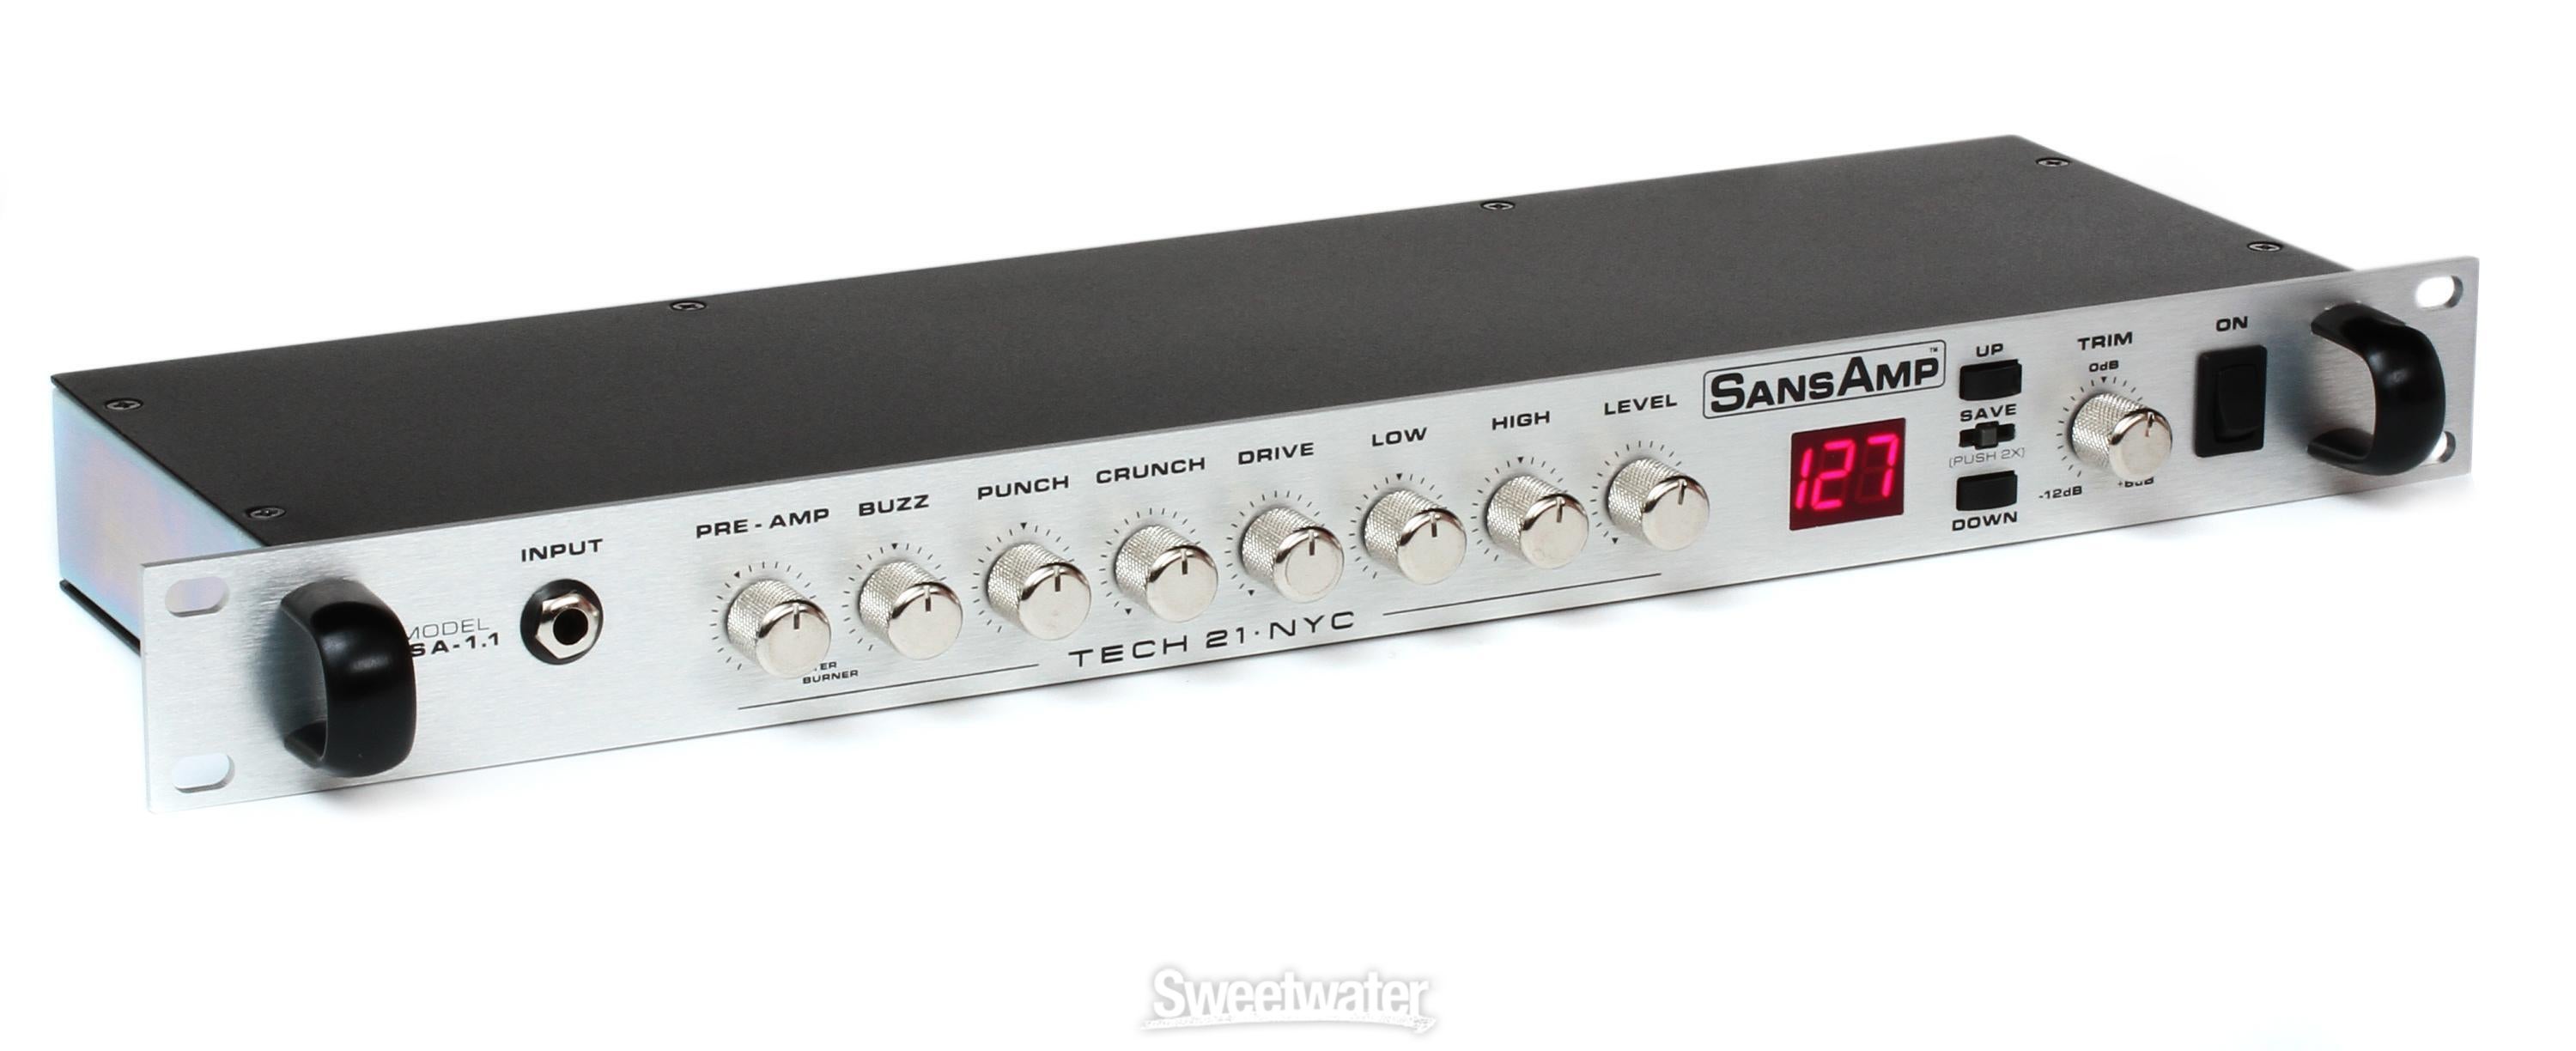 Tech 21 SansAmp PSA-1.1 Analog Tube Amplifier Emulator Pre-Amp 